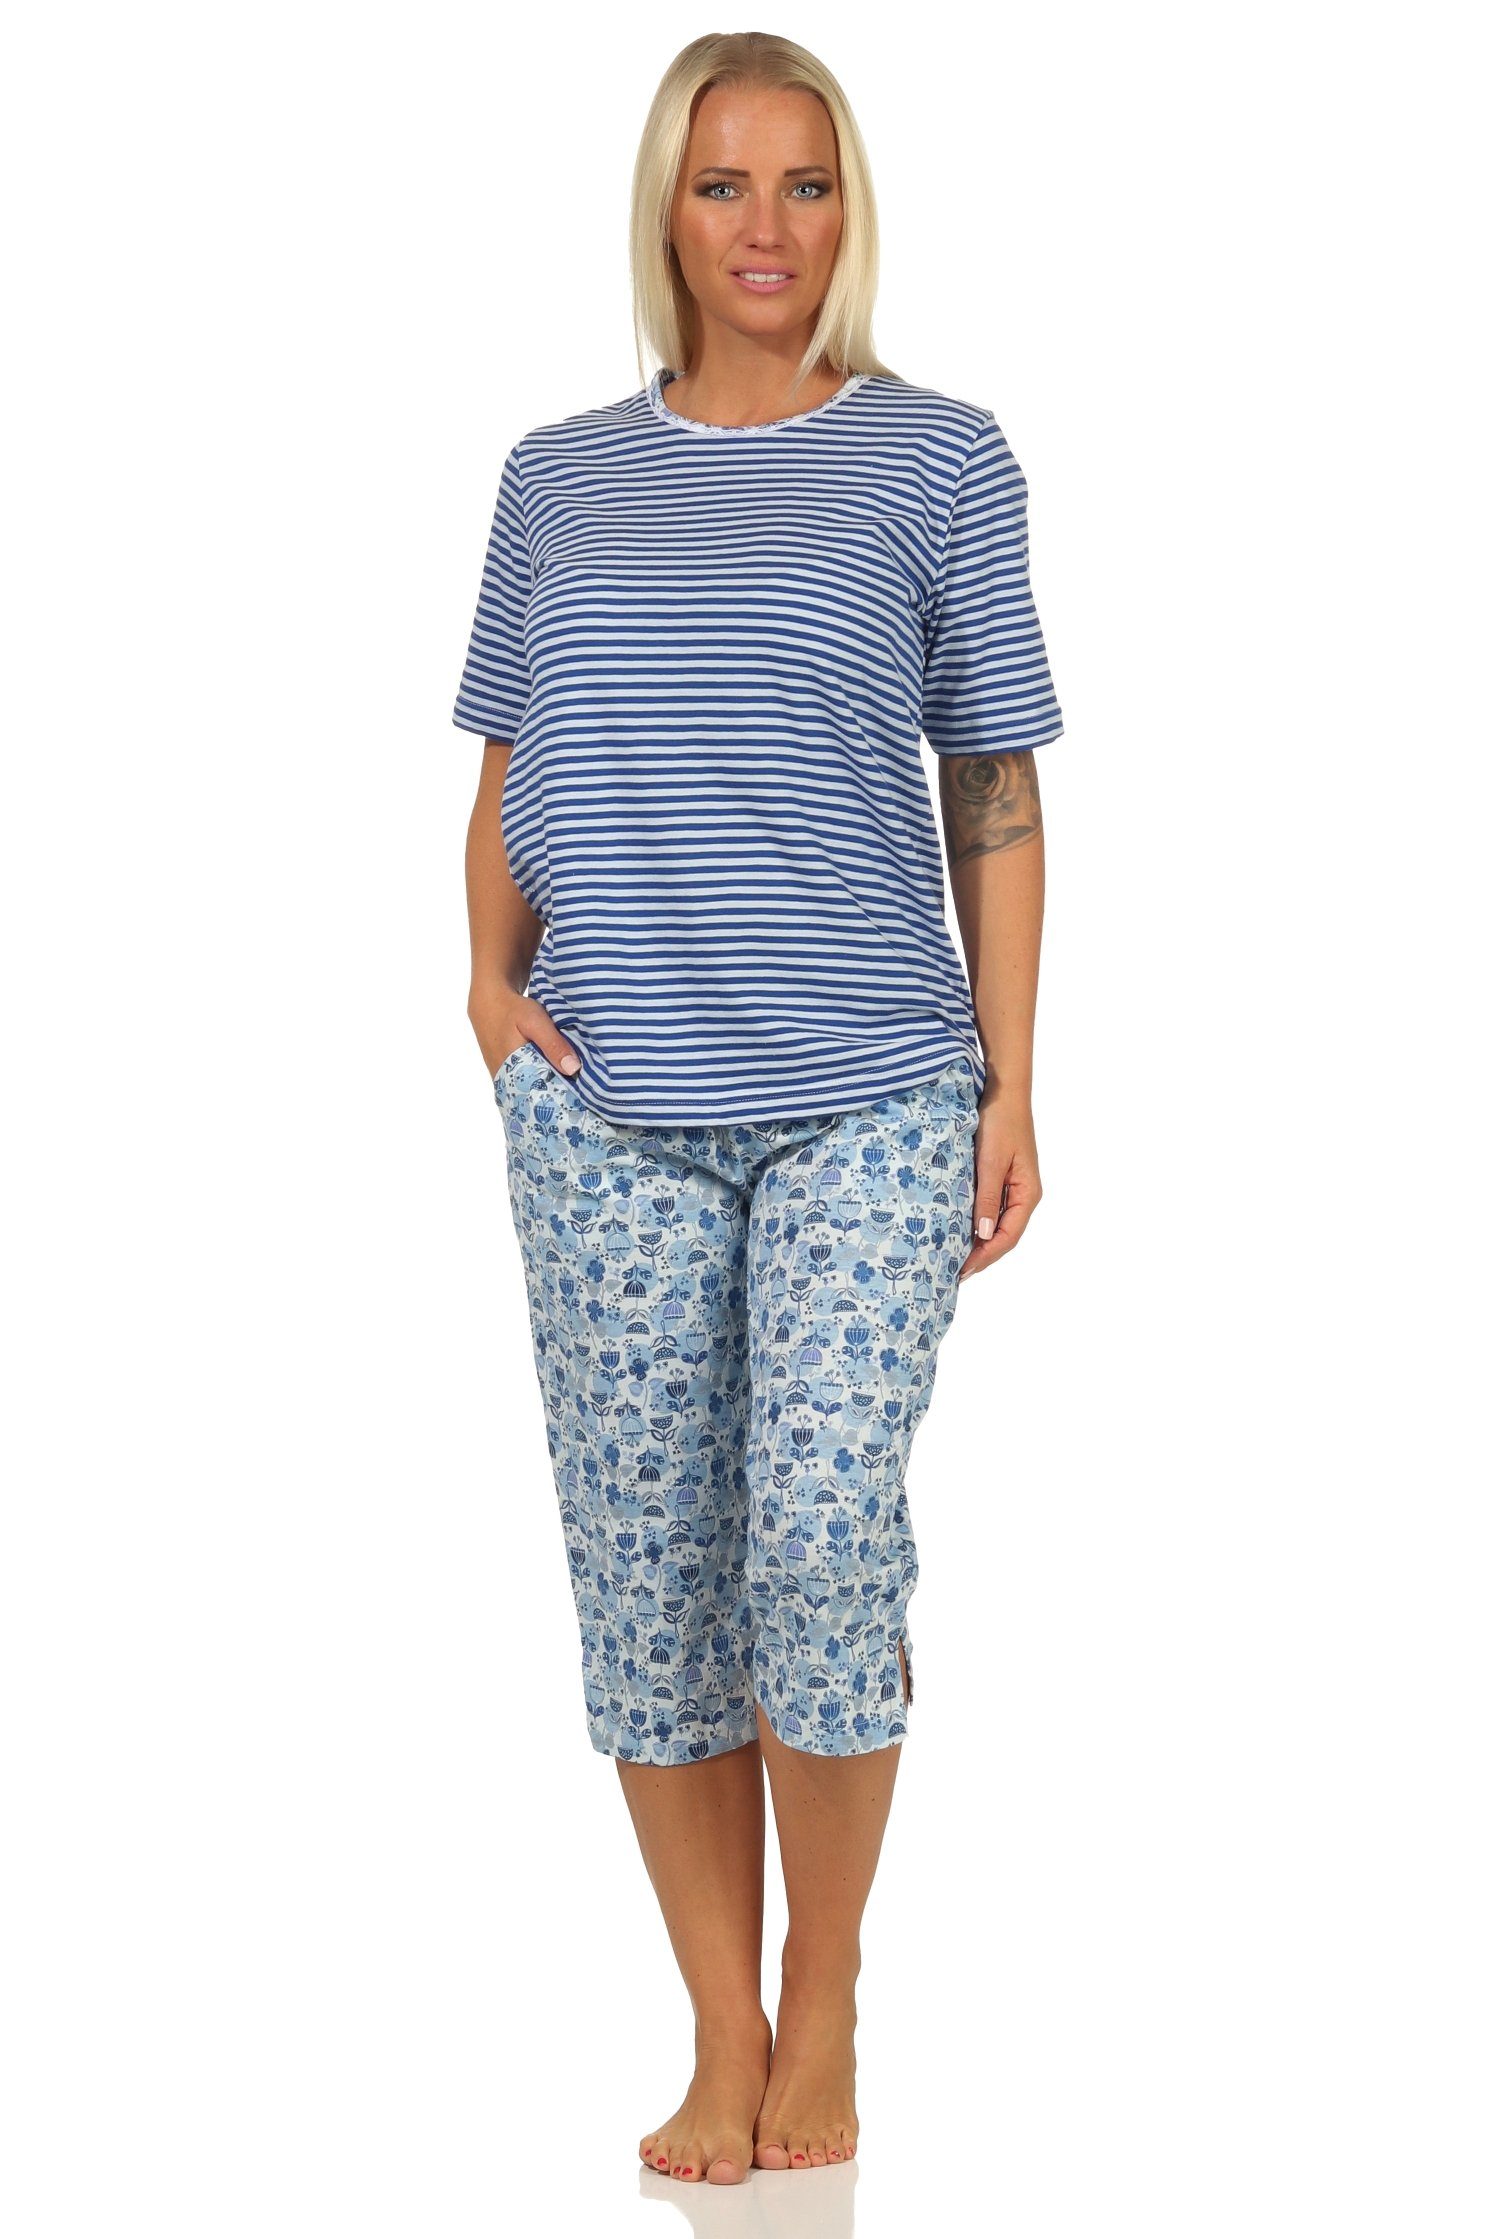 Spitzenbesatz Damen in Normann Capri - Schlafanzug hellblau mit auch Übergrößen Pyjama